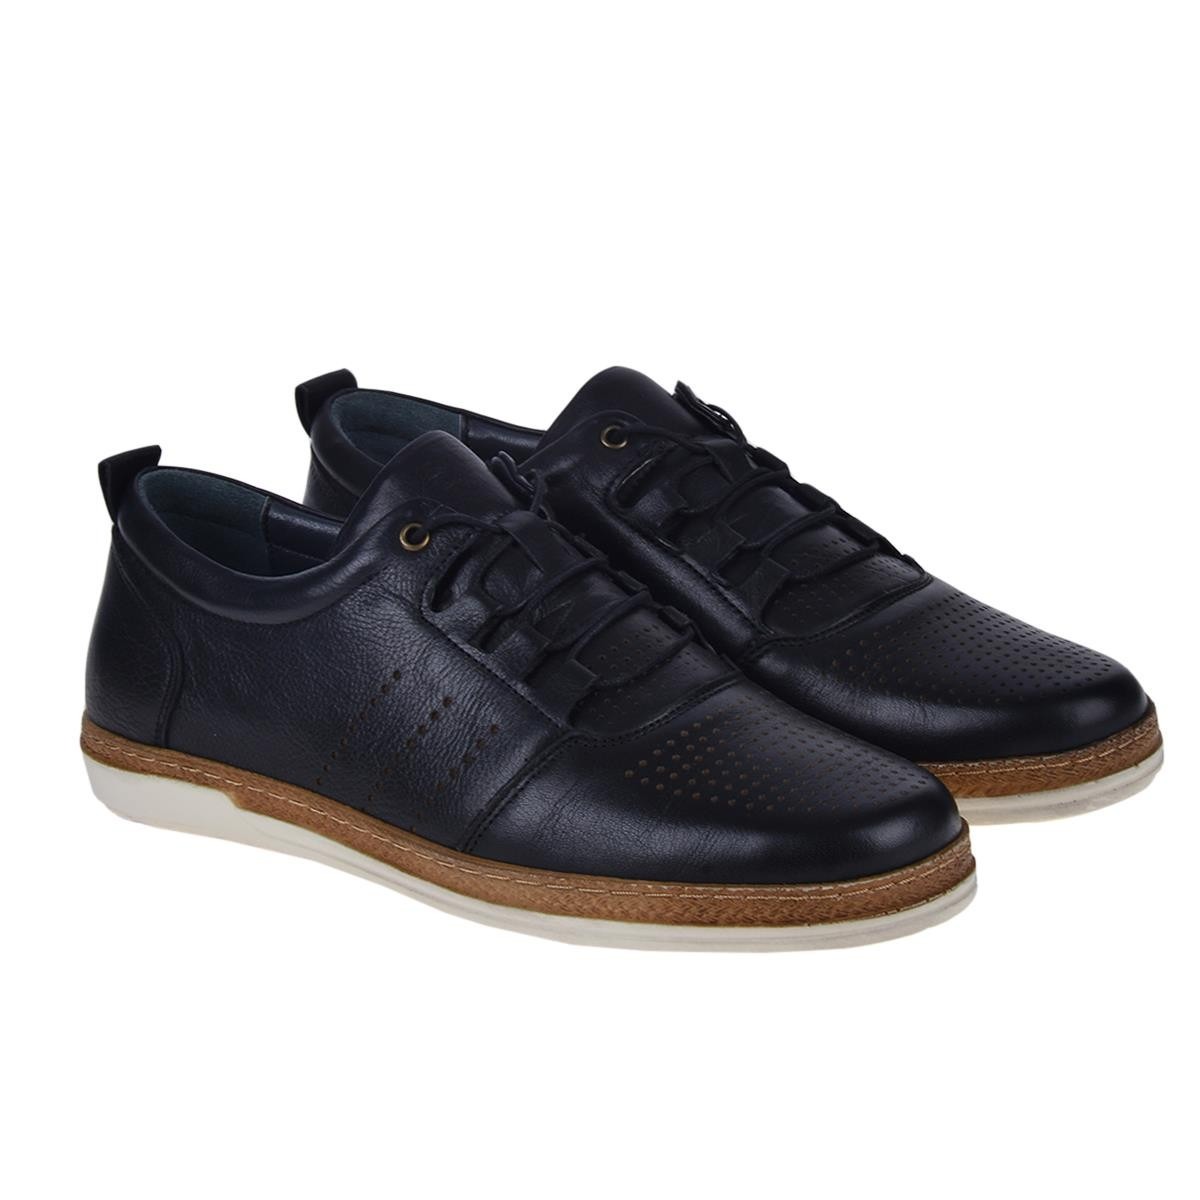 Flo 211040 Siyah %100 Deri Erkek Klasik Sneaker Ayakkabı. 2